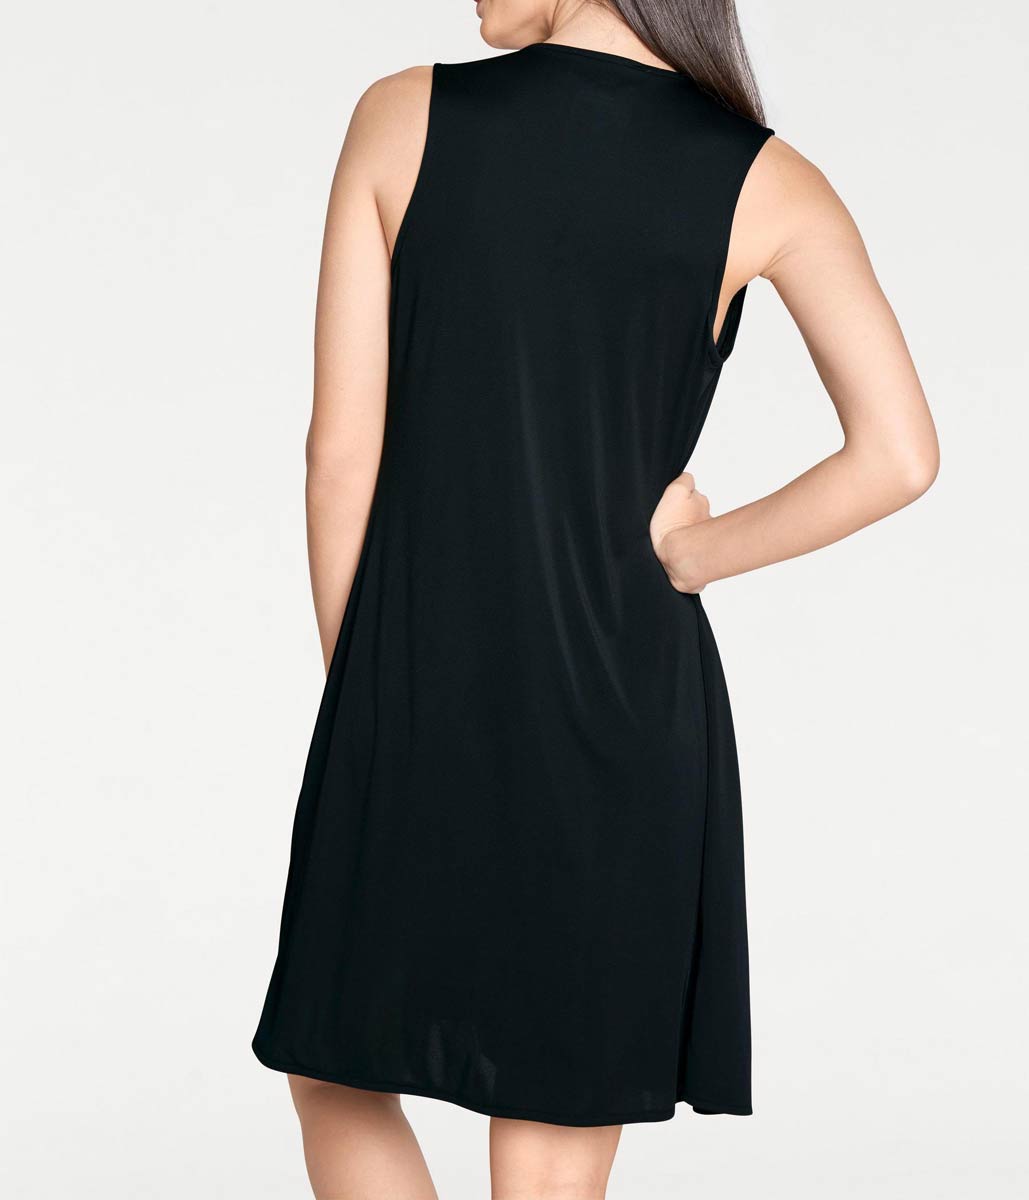 Rick Cardona Damen Designer-Kleid, schwarz